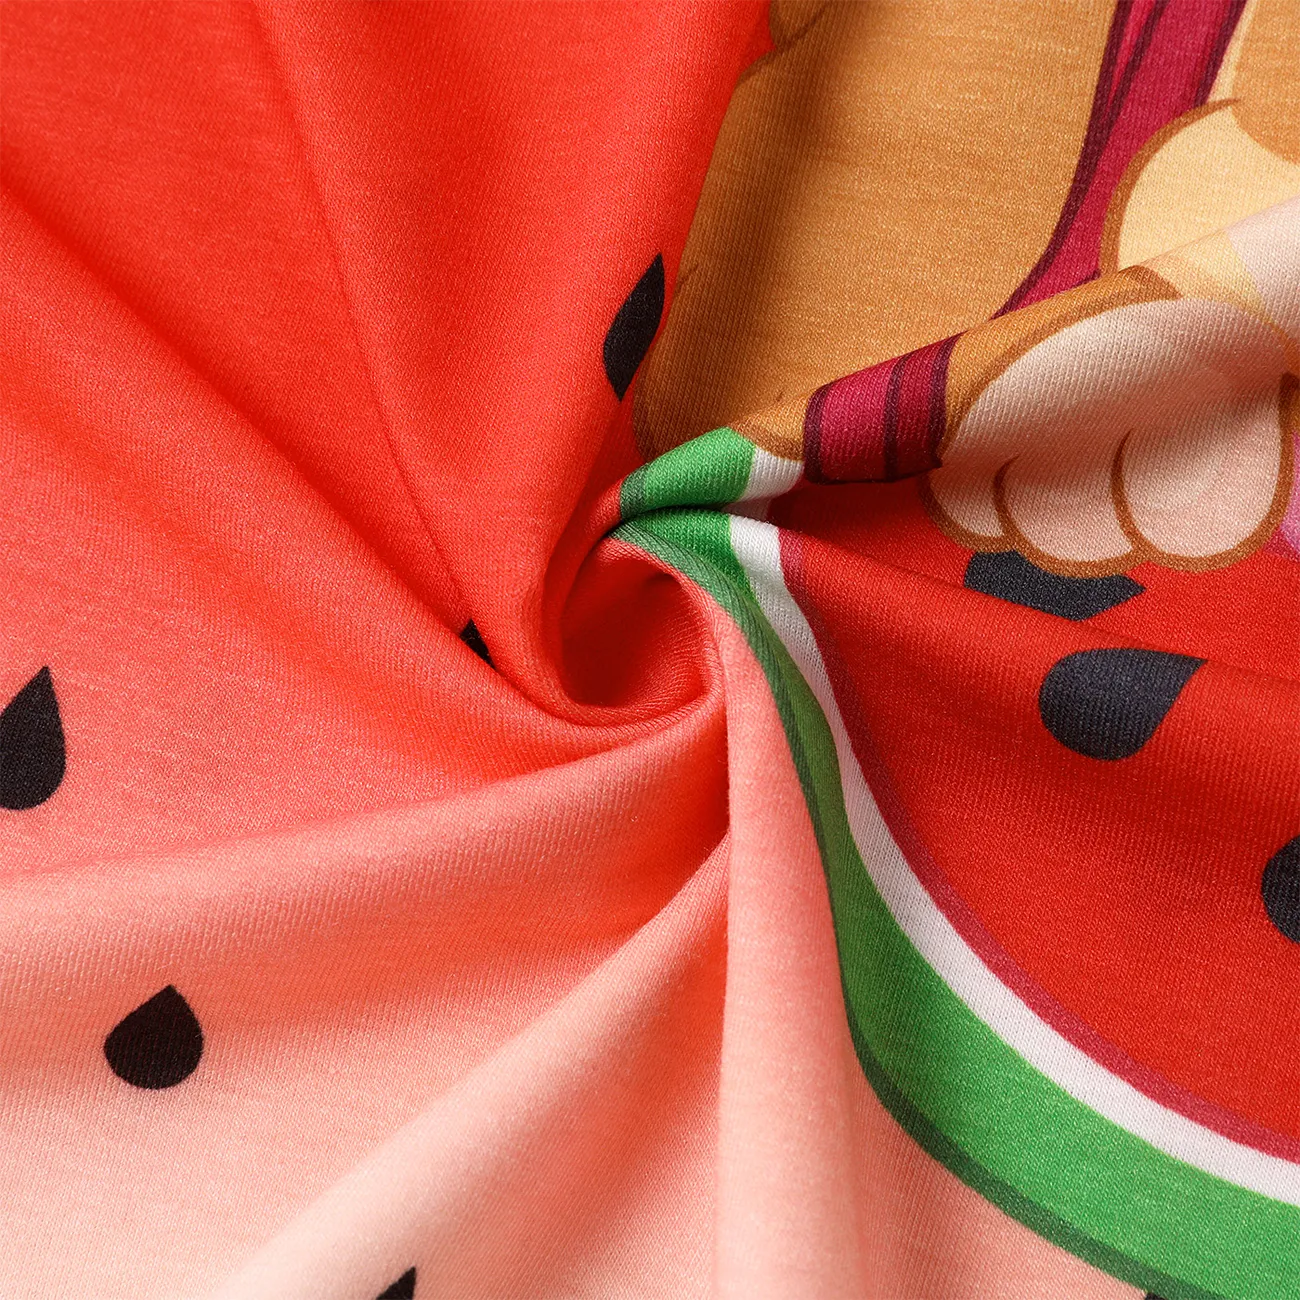 Helfer auf vier Pfoten Kleinkinder Mädchen Tanktop Süß Wassermelone Kleider rot big image 1